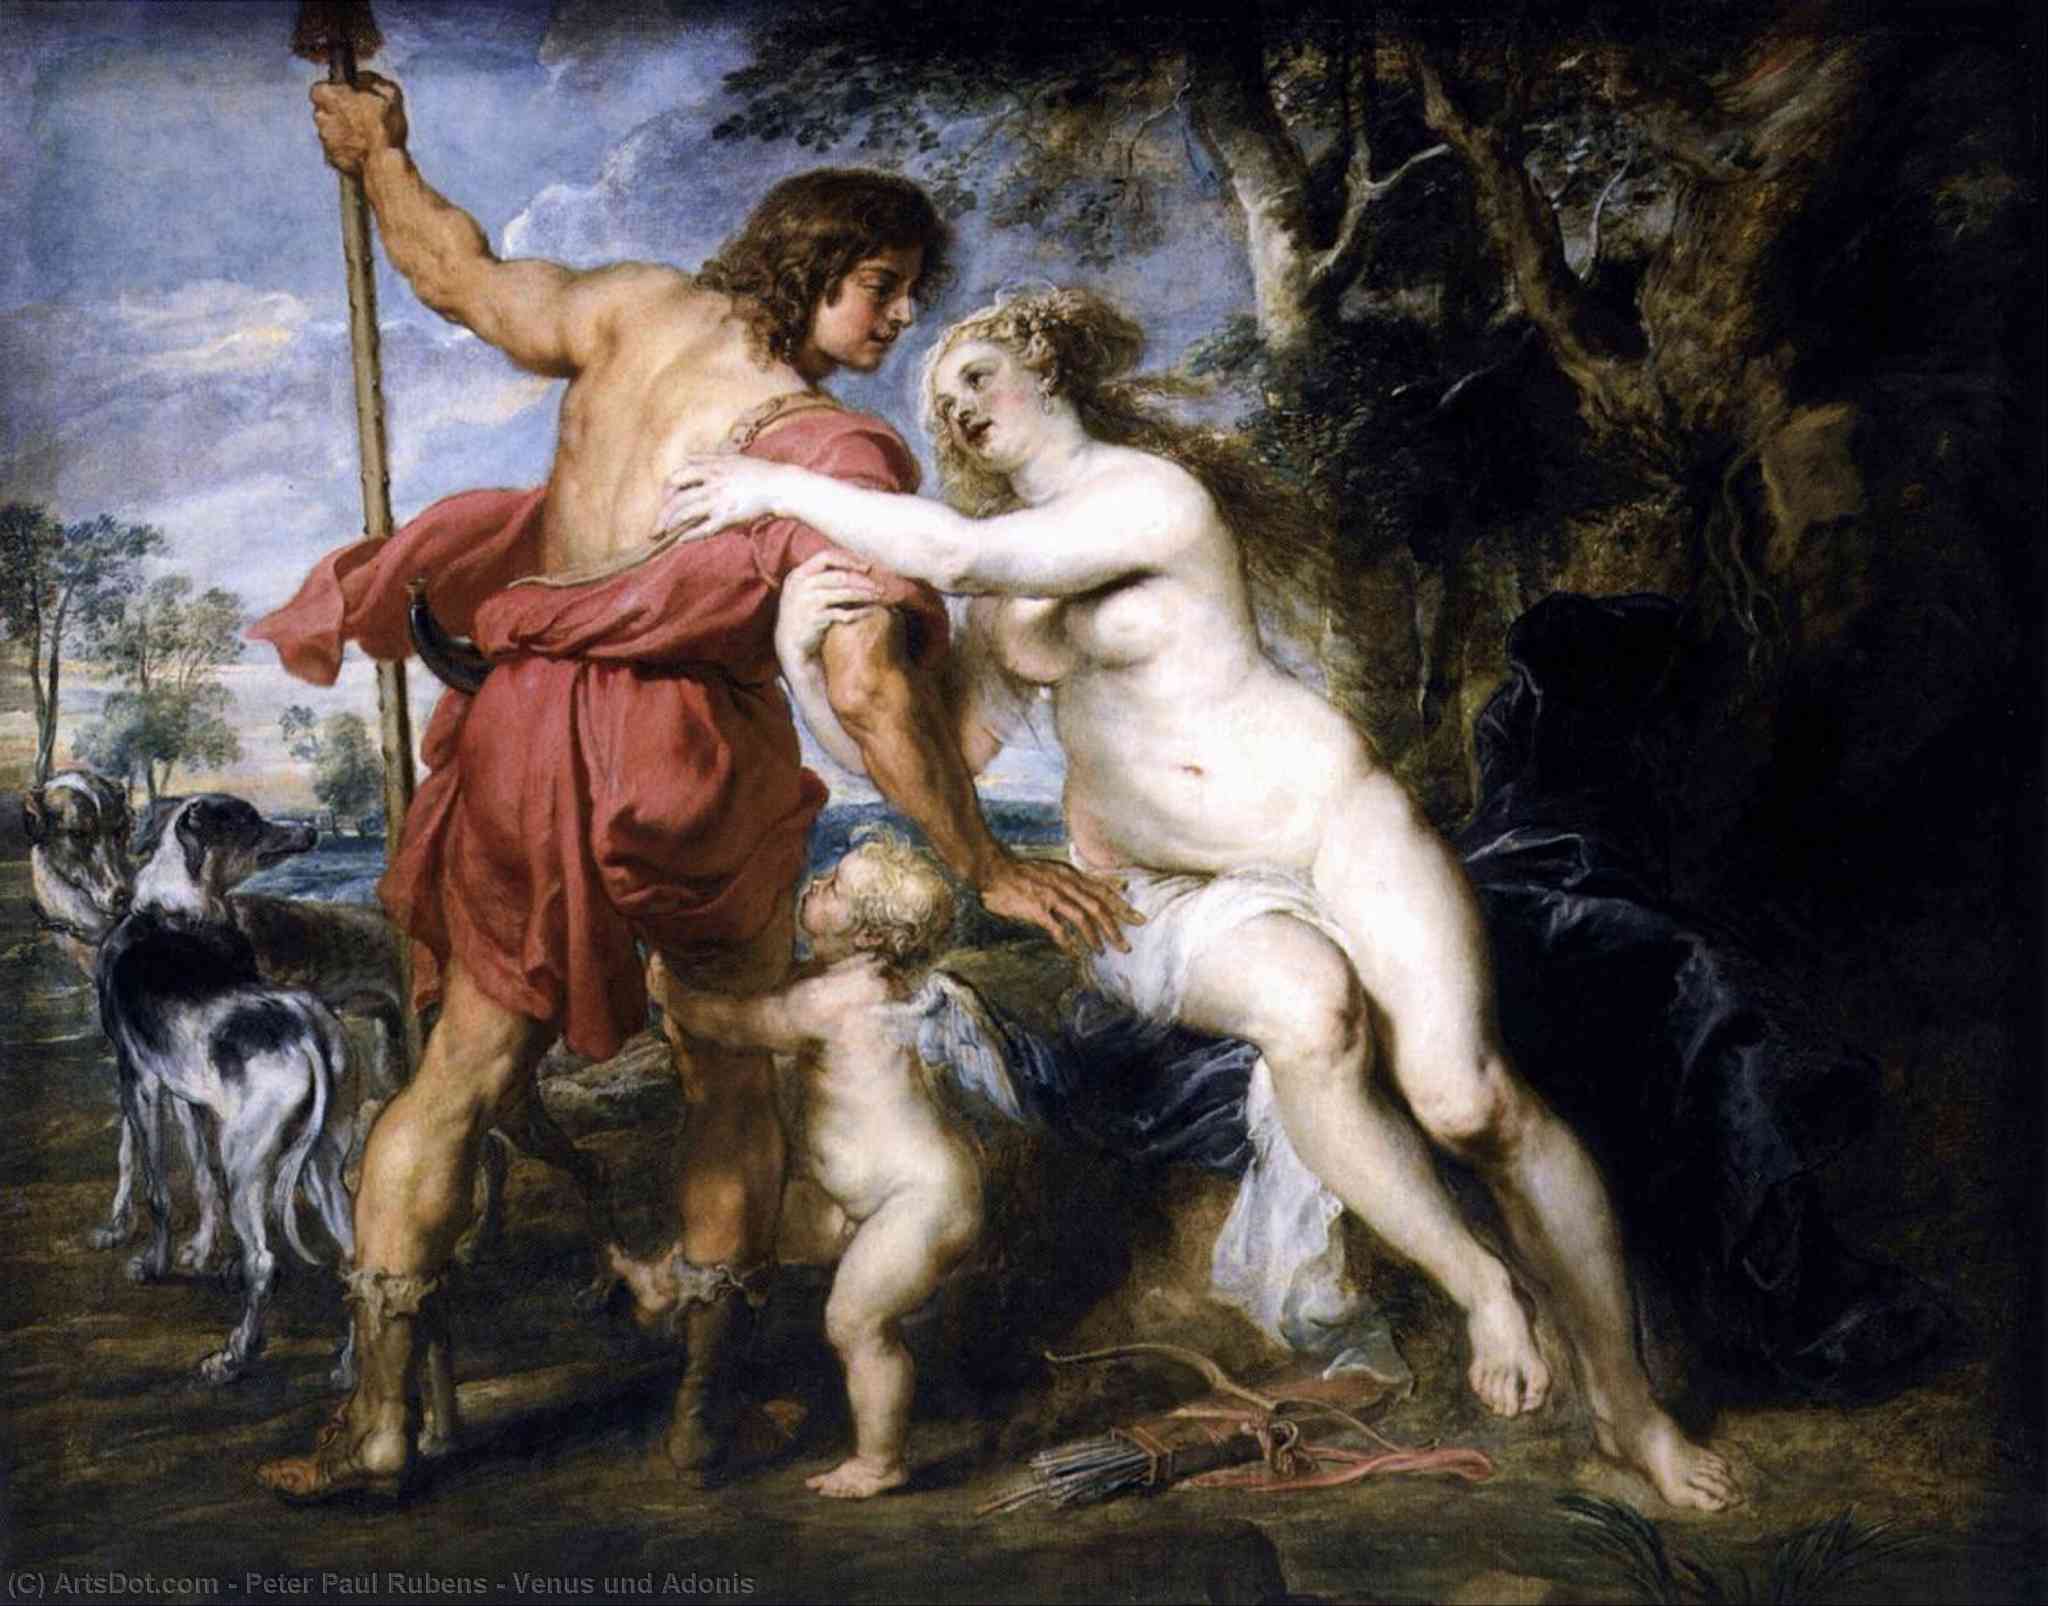 WikiOO.org - Güzel Sanatlar Ansiklopedisi - Resim, Resimler Peter Paul Rubens - Venus und Adonis